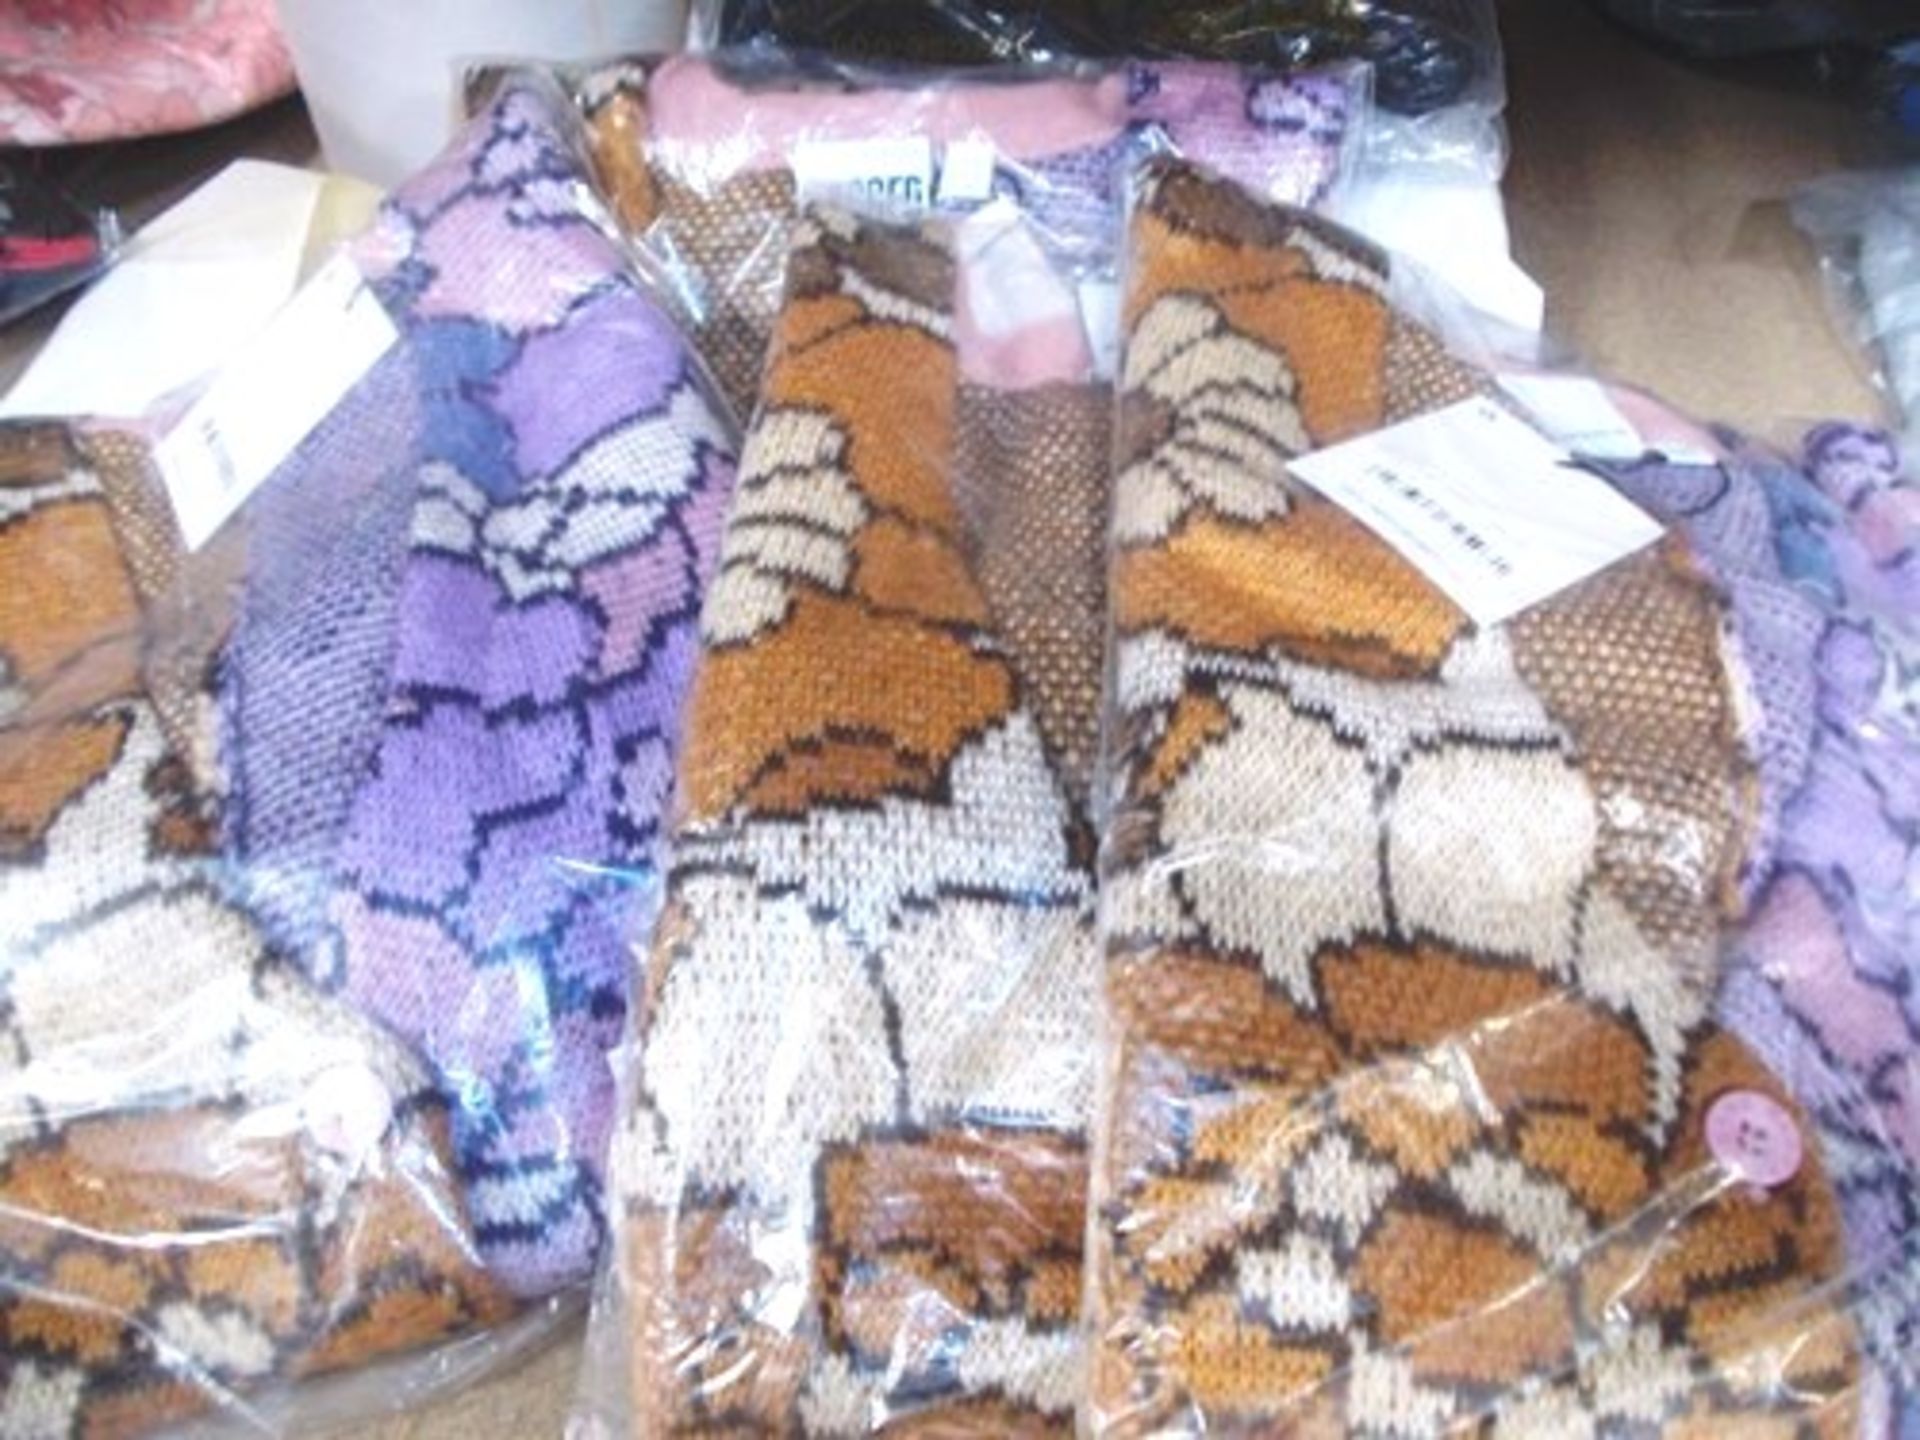 4 x Ragged Priest eyelash knit splice floral cardigans, 1 x size XS, 1 x size S, 1 x size M and 1